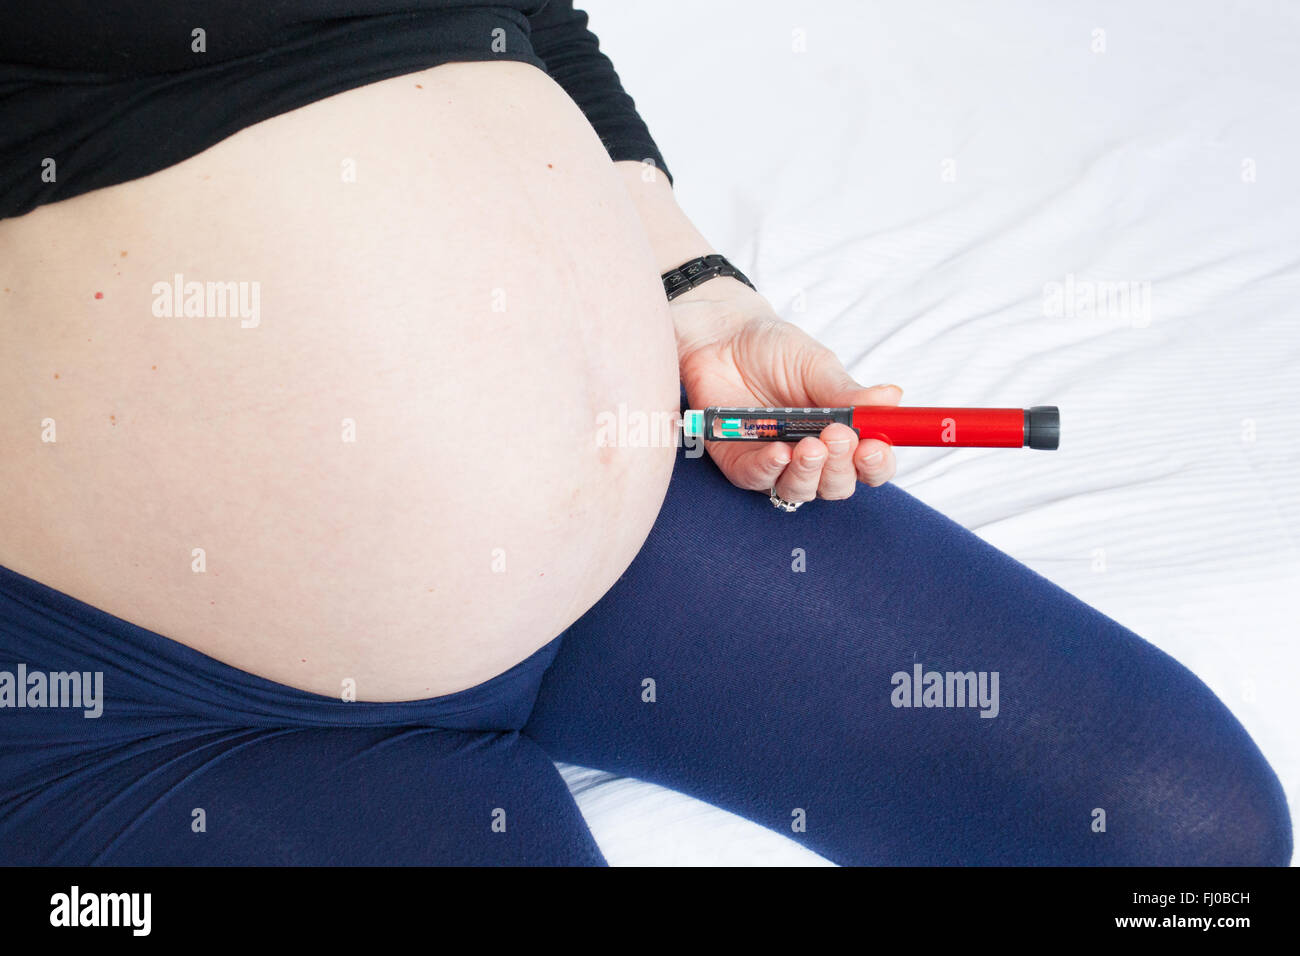 Ein neun Monate schwangere Frau sich mit den langsamen spritzt wirkenden  Hintergrund Insulin Levemir, ihren Typ1-Diabetes zu kontrollieren  Stockfotografie - Alamy